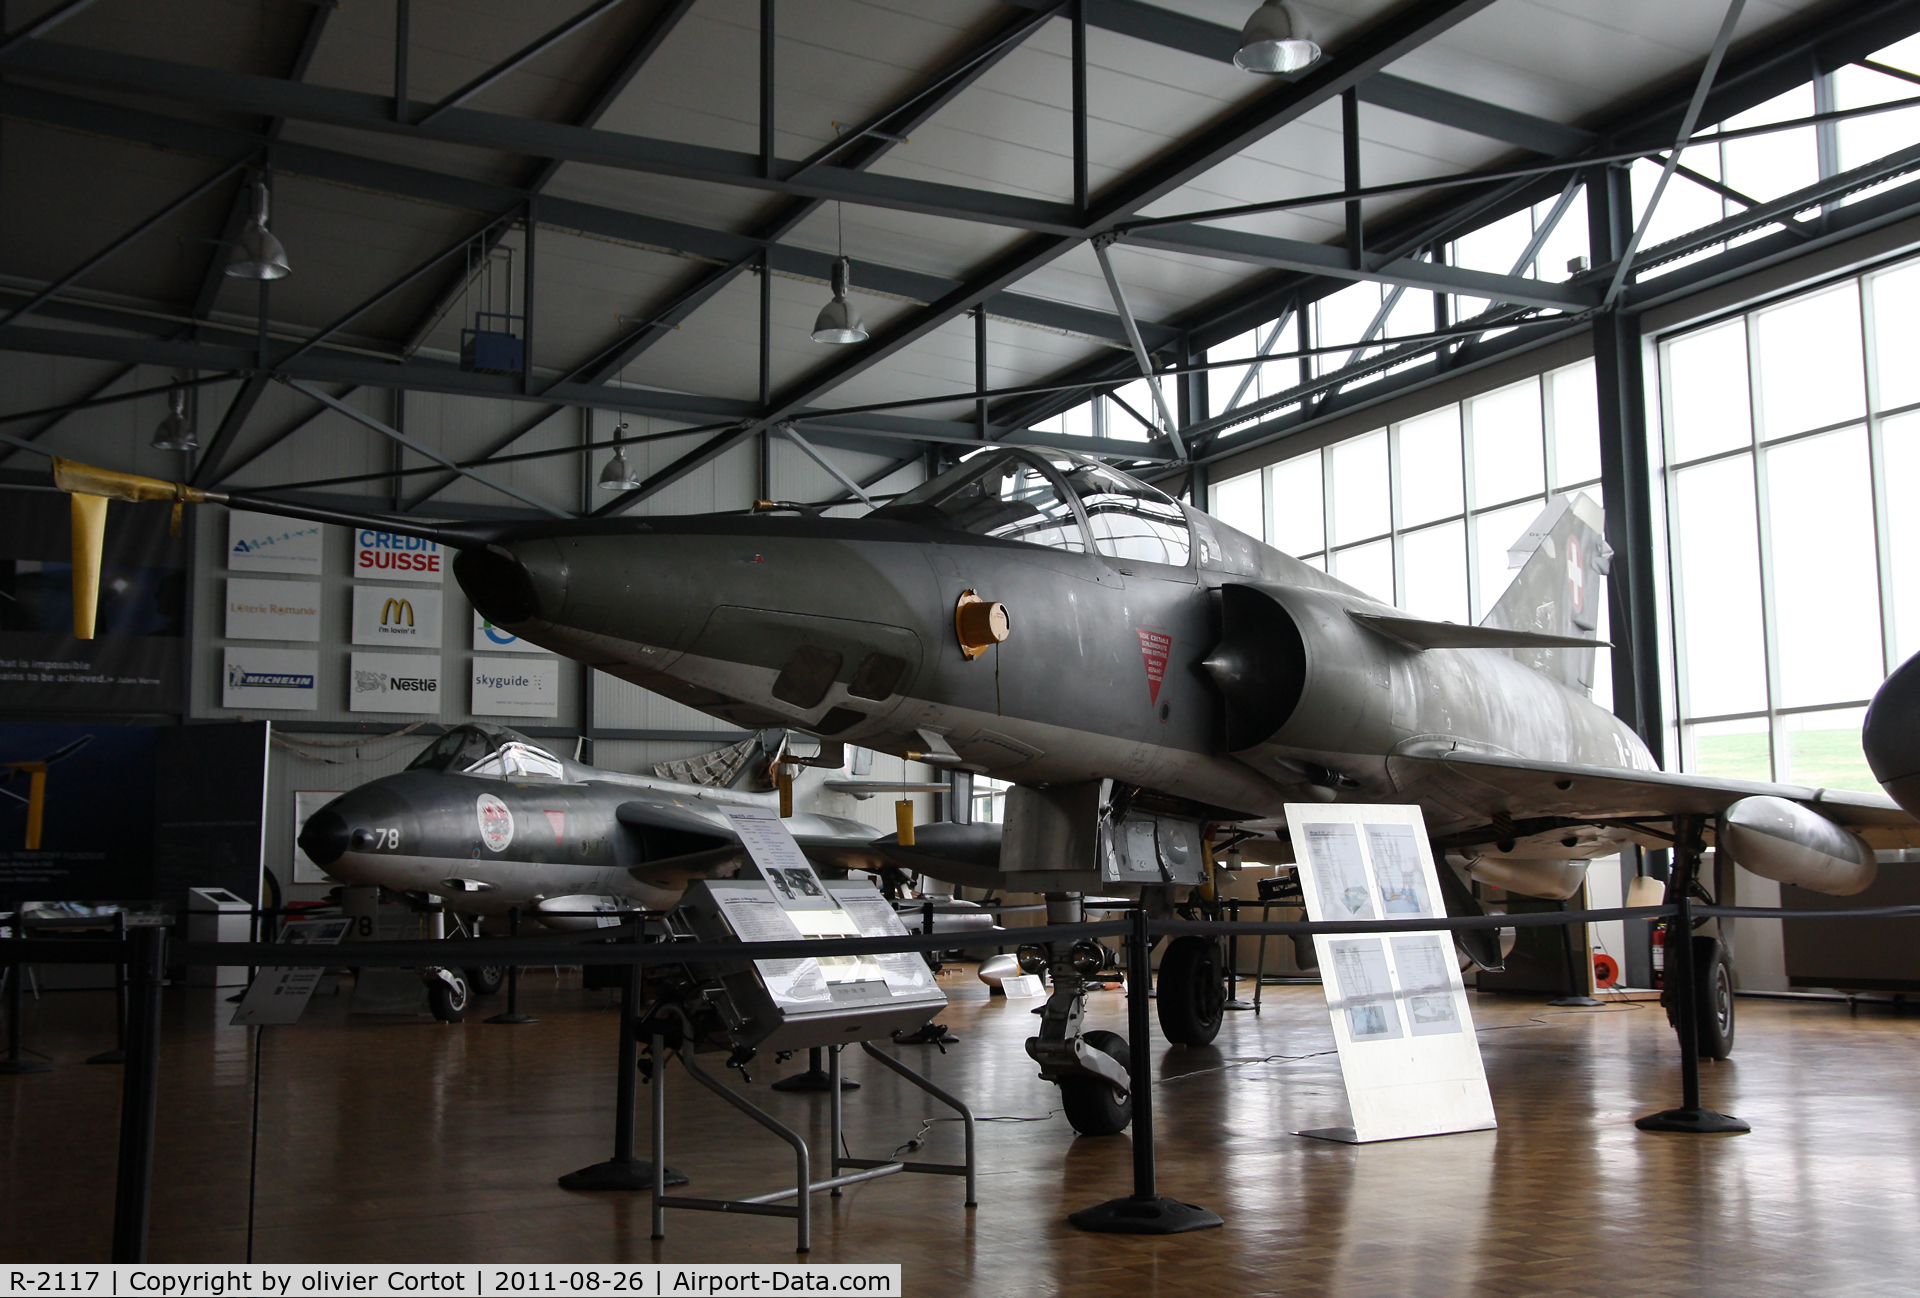 R-2117, Dassault Mirage IIIRS C/N 17-26-149/1040, Payerne museum